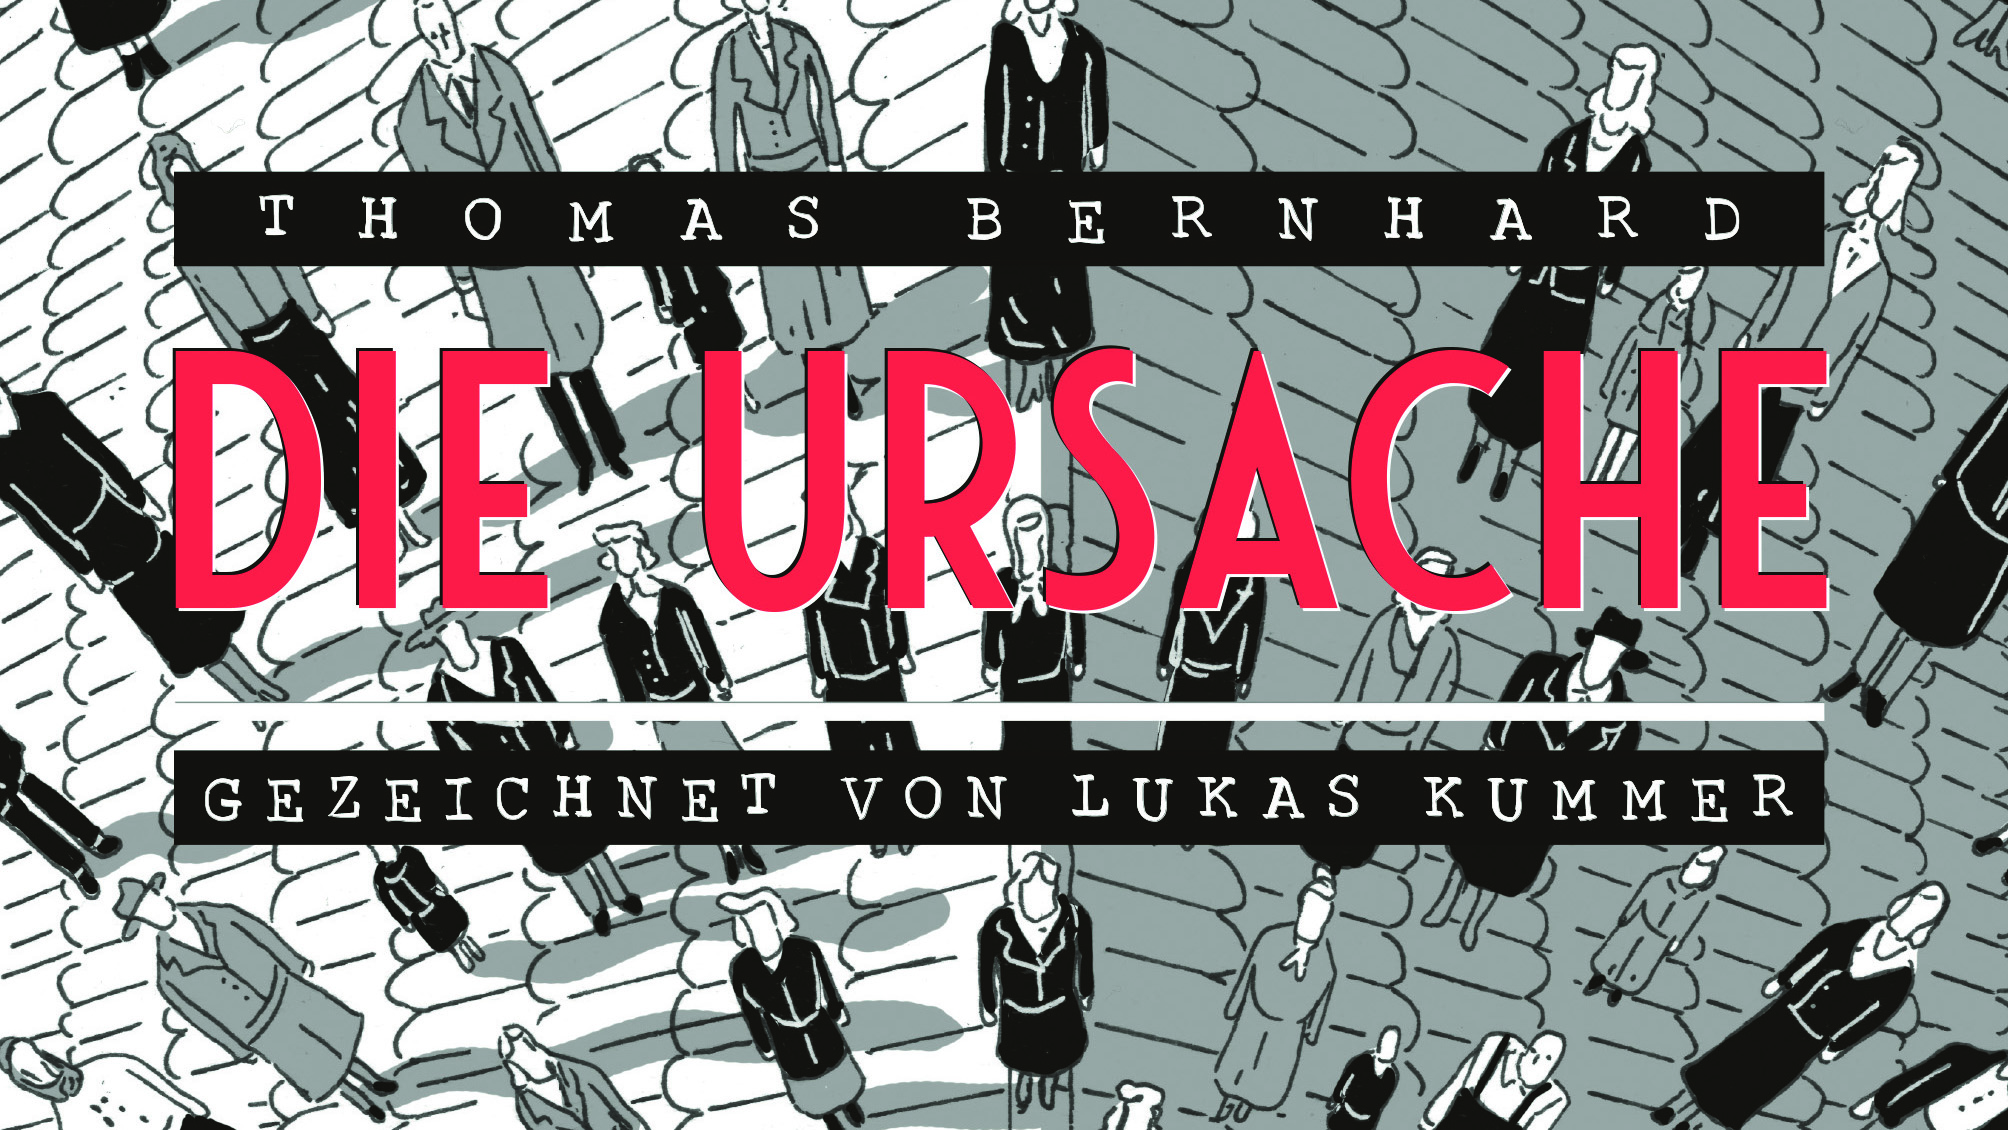 Thomas Bernhard als Comic